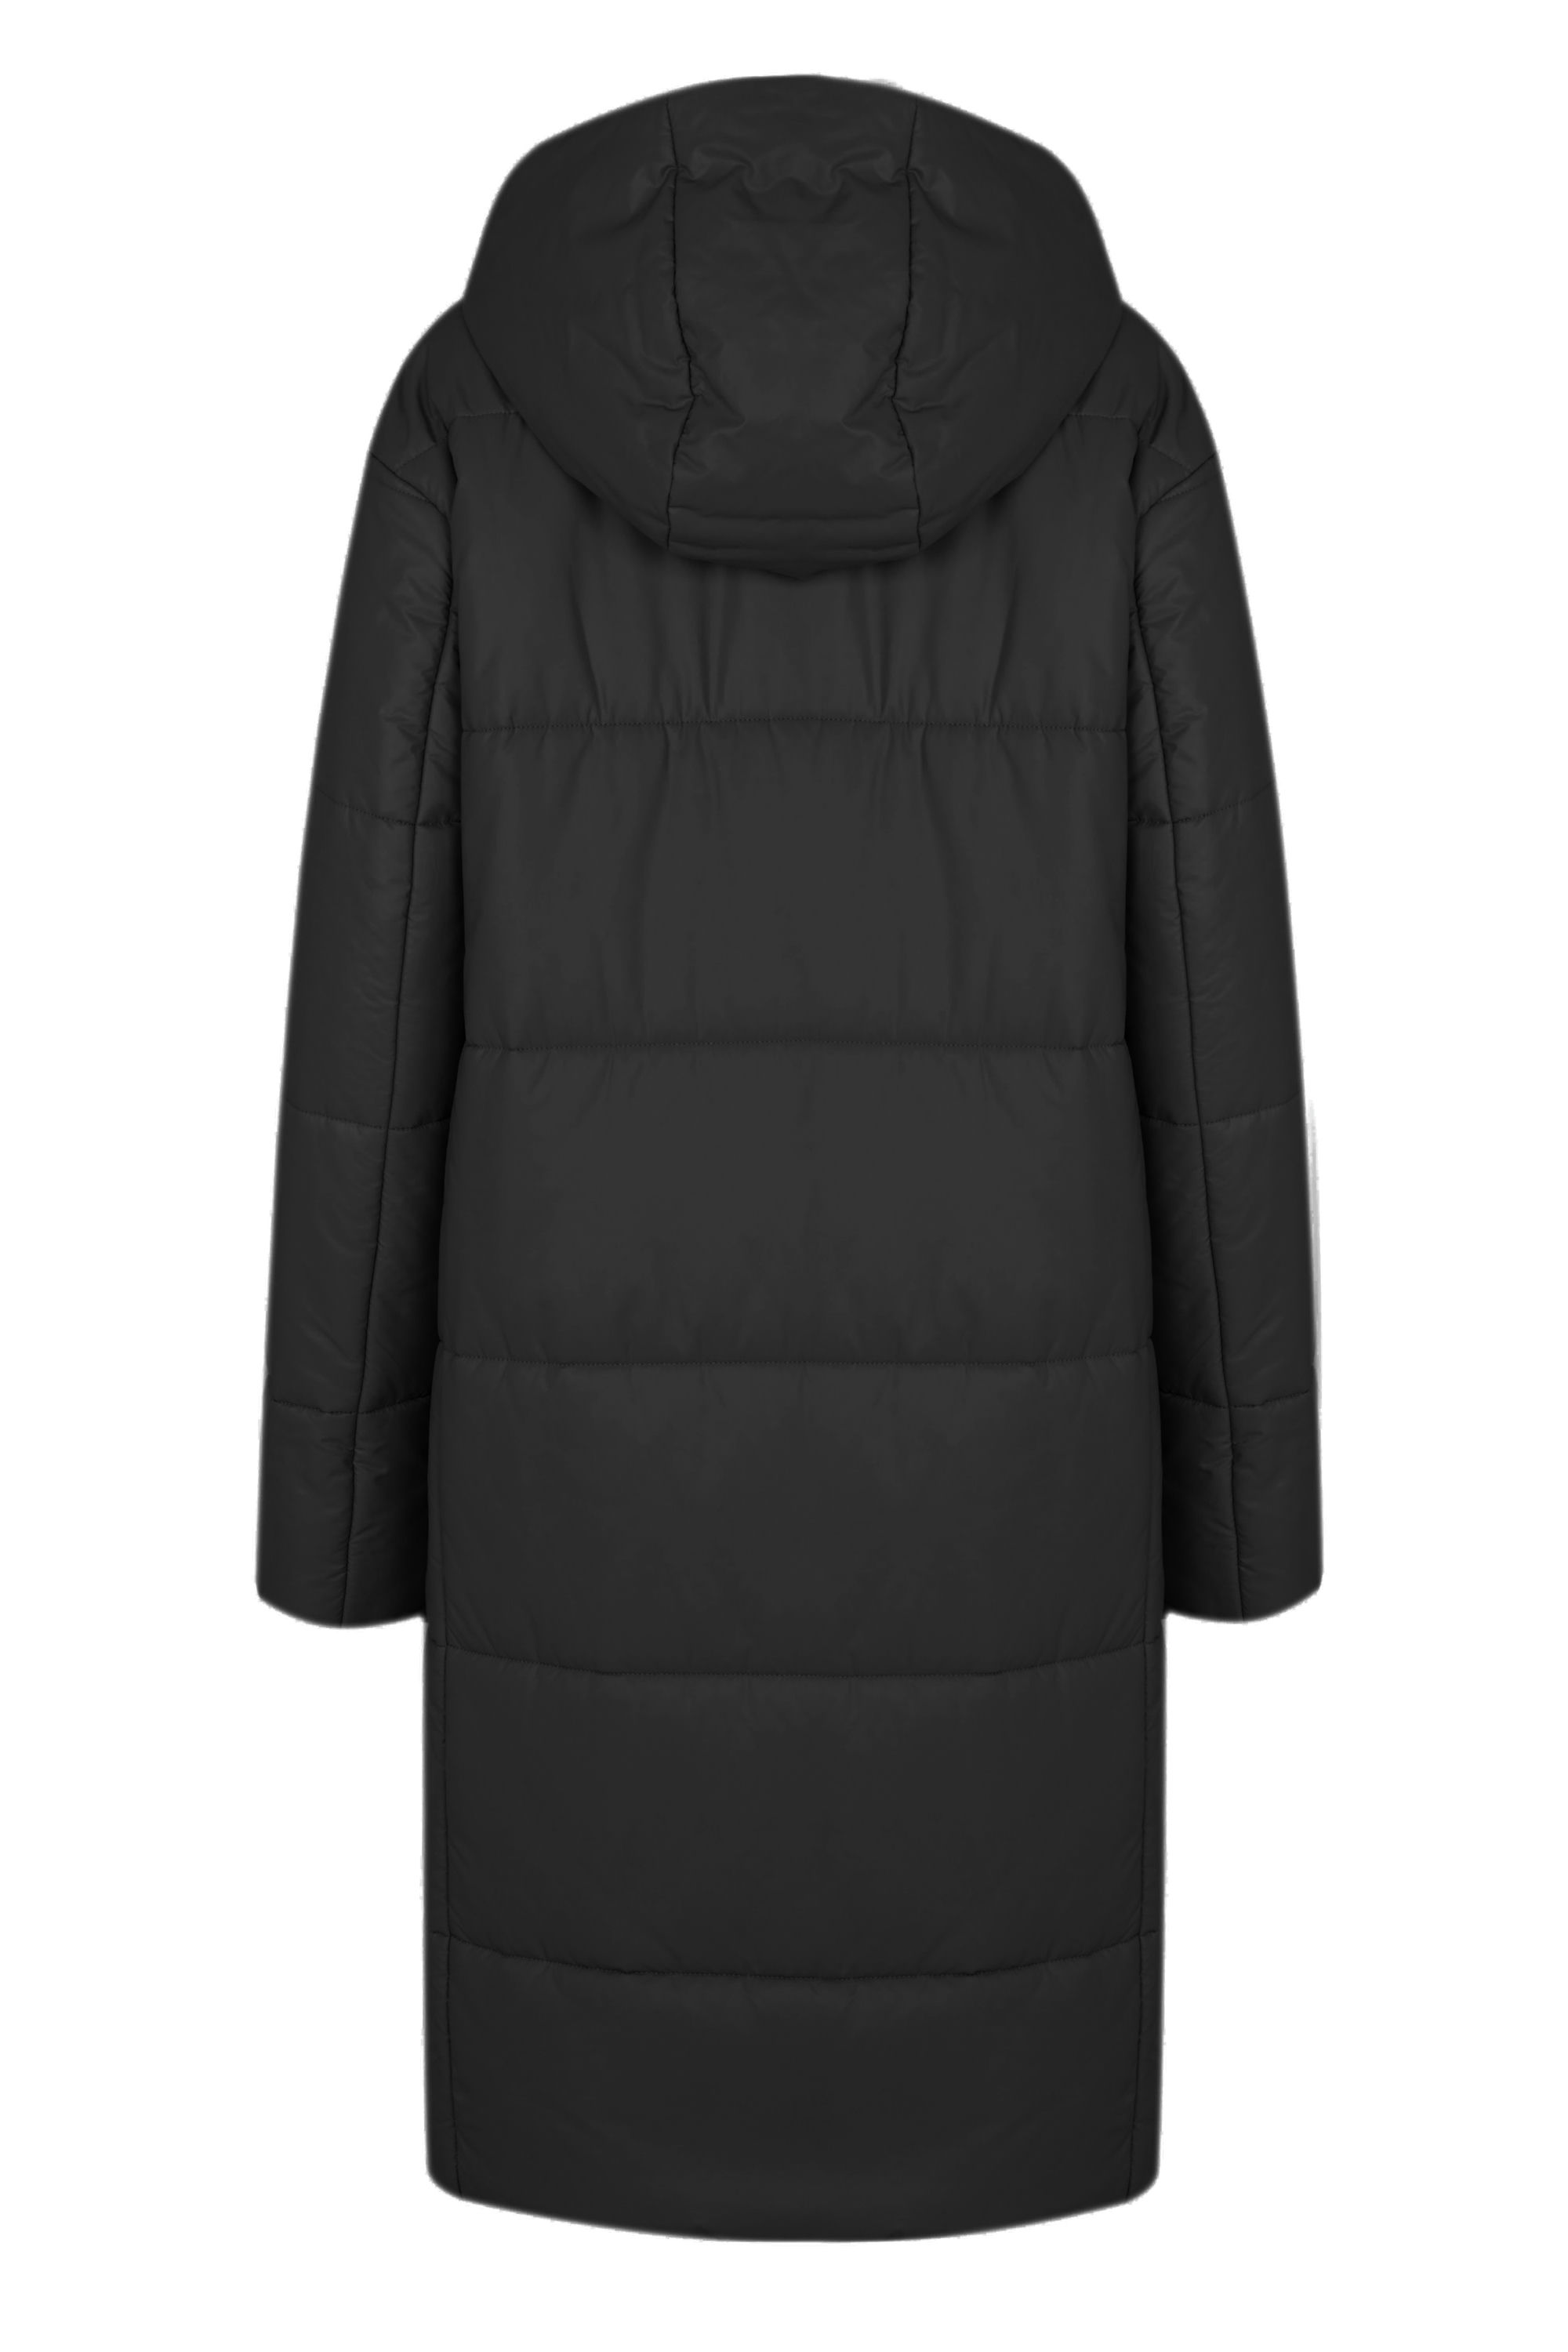 Пальто женское плащевое утепленное 5-12327-1. Фото 3.